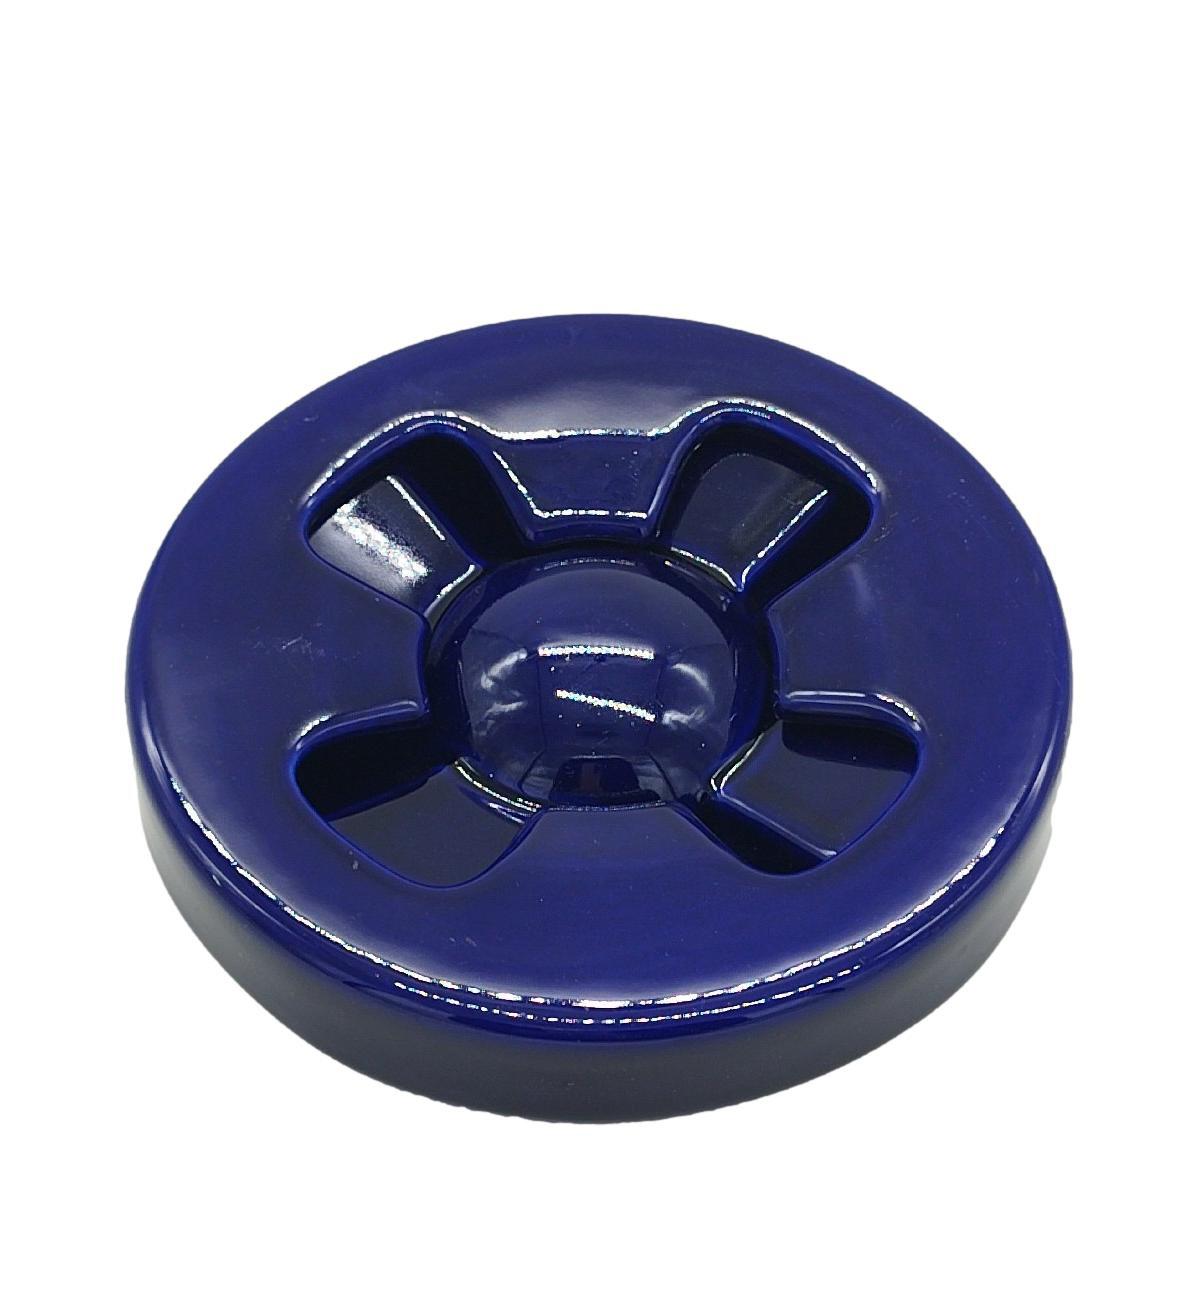 Iconic 1970s dark blue ceramic ashtray designed by Mangiarotti for F.lli Brambilla.